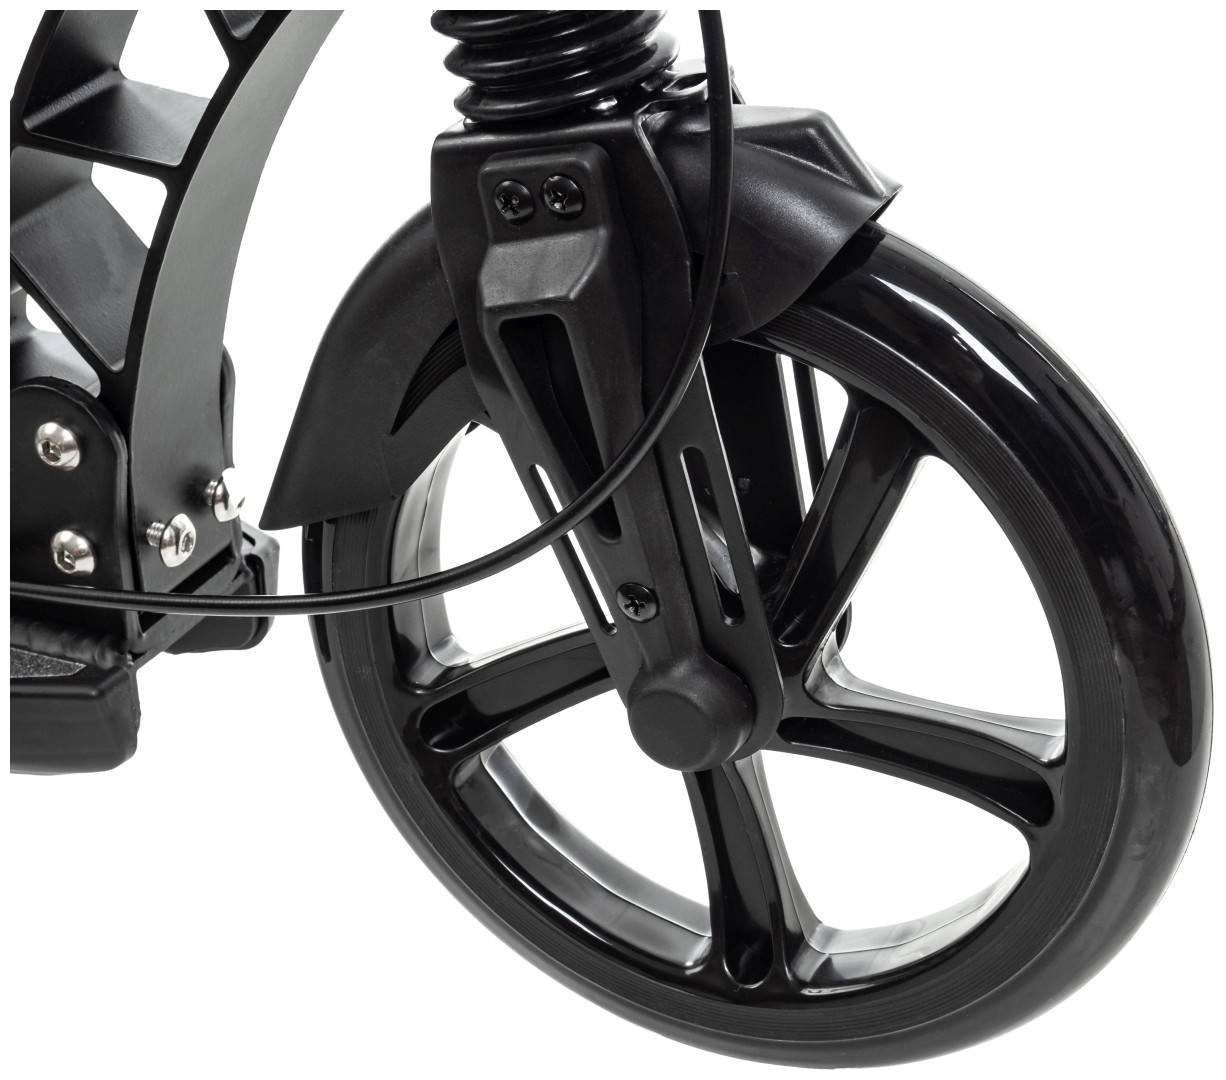 REGAMO Erwachsene Roller schwarz HyperMotion Scooter für -